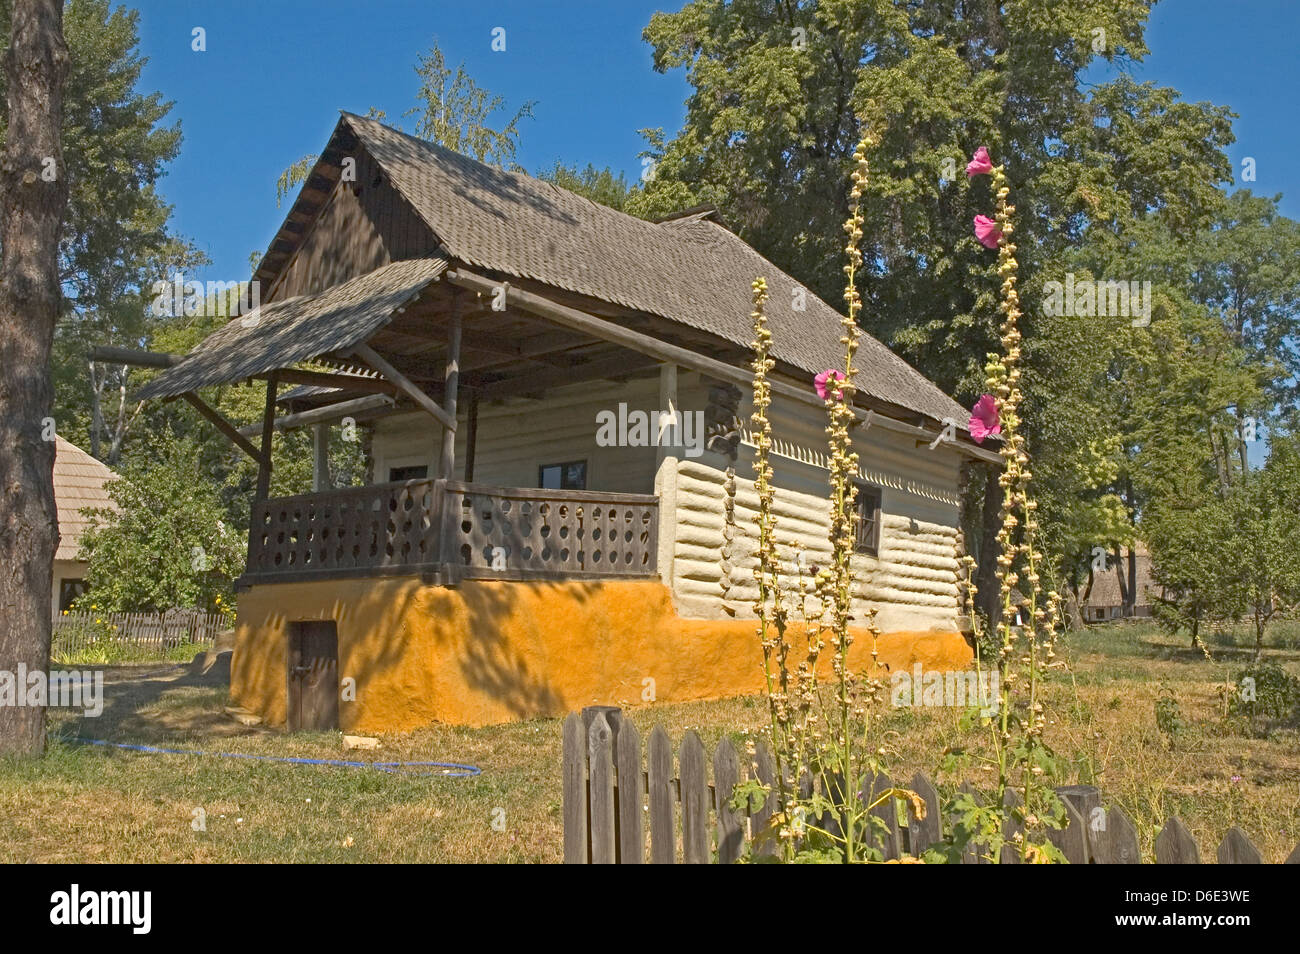 Europa, Rumänien, Bukarest, Herastrau Park Folk Museum, traditionellen Gebäude von Naruja (19. Jh.) Stockfoto